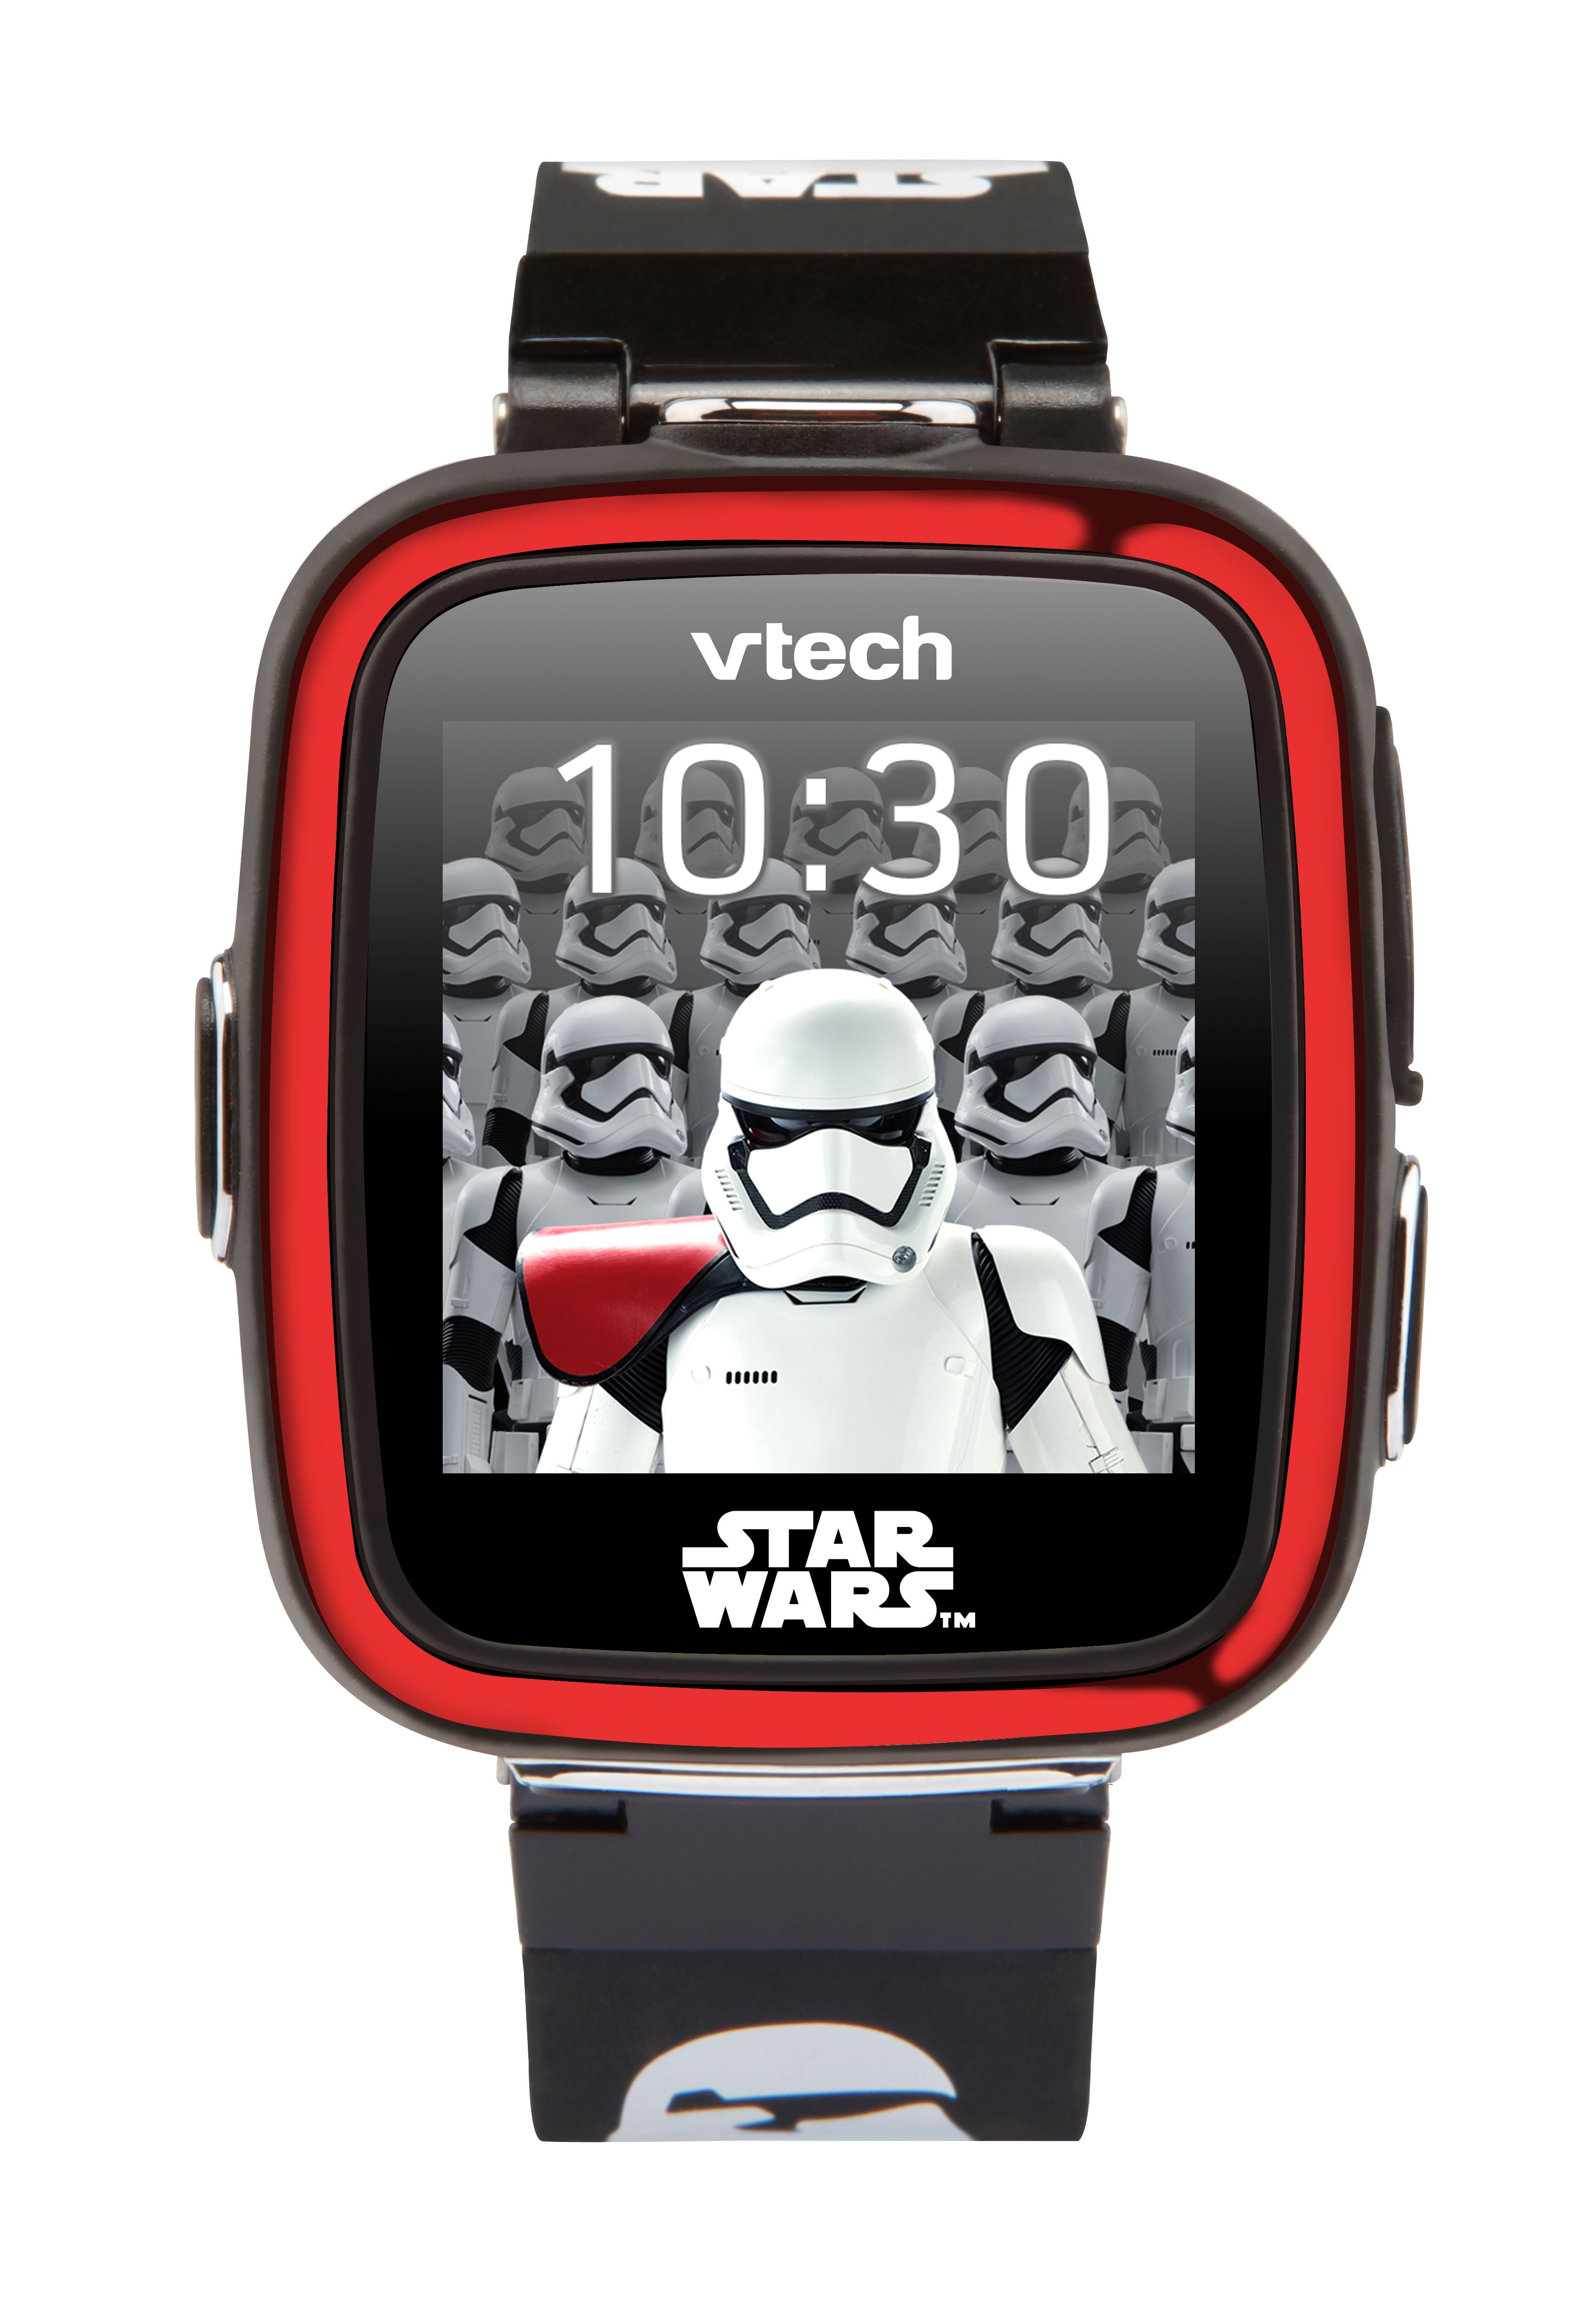 vtech d2 watch